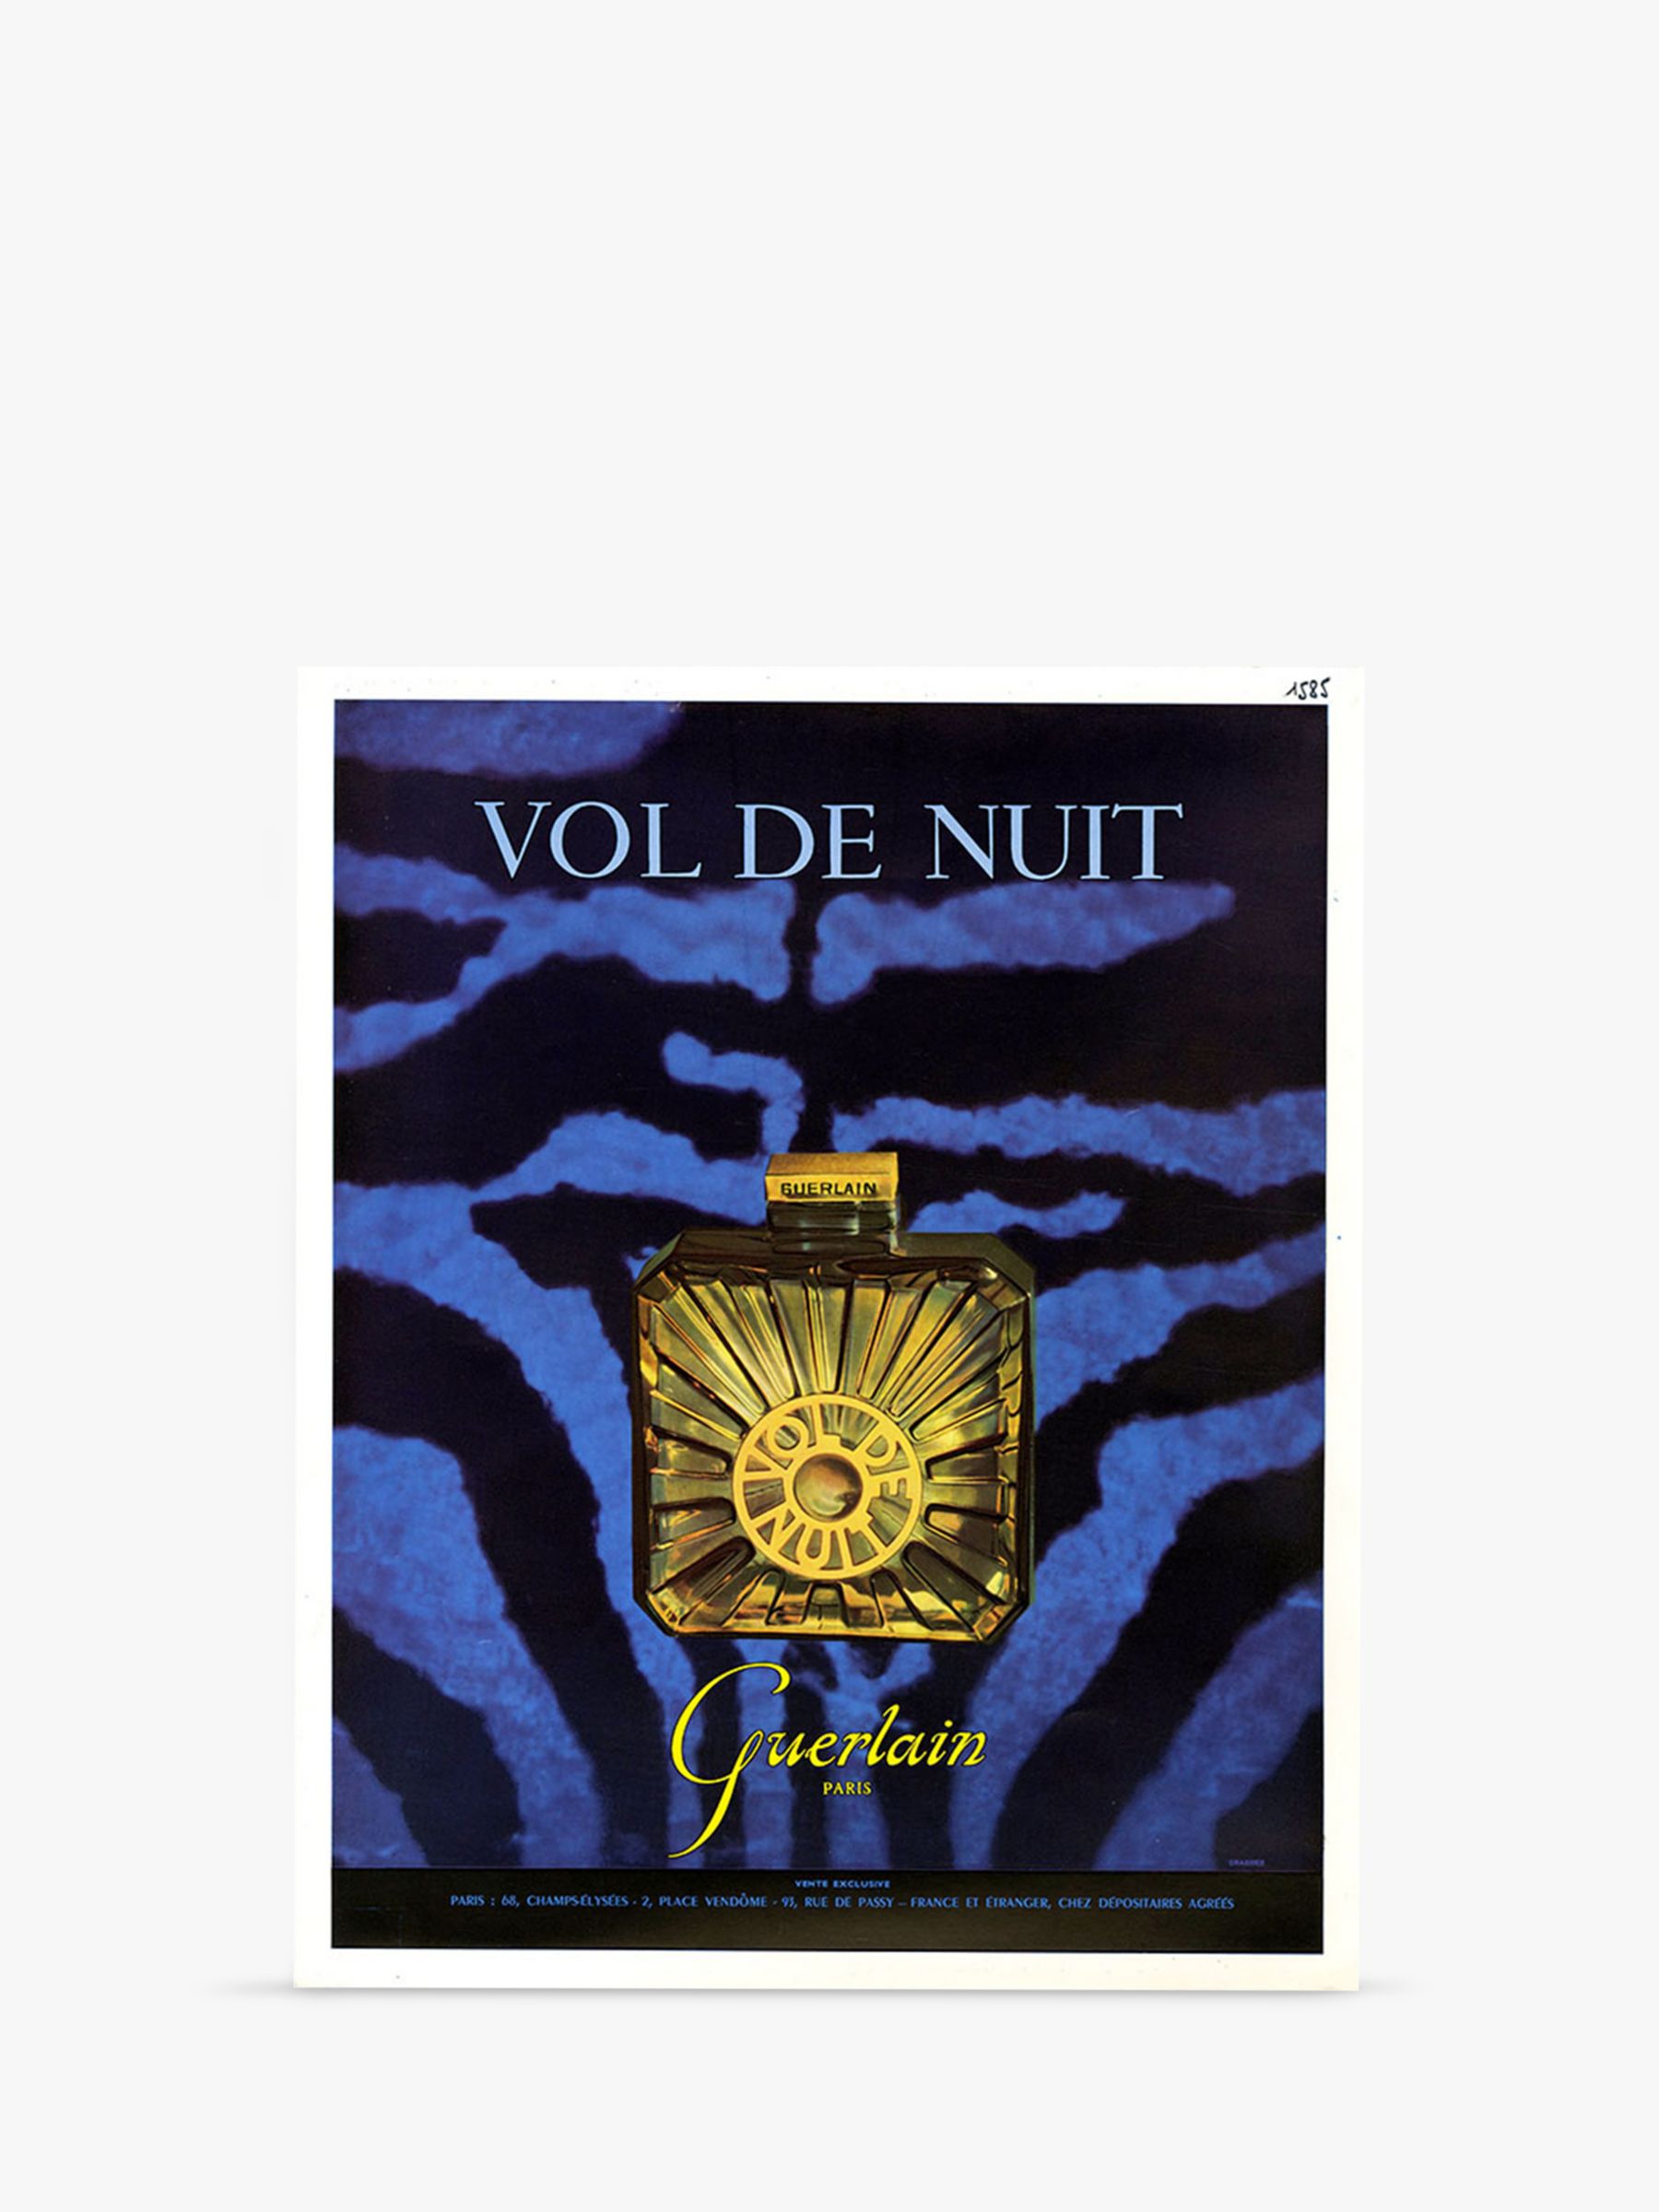 Guerlain Vol de Nuit Eau de Toilette, 75ml at John Lewis & Partners